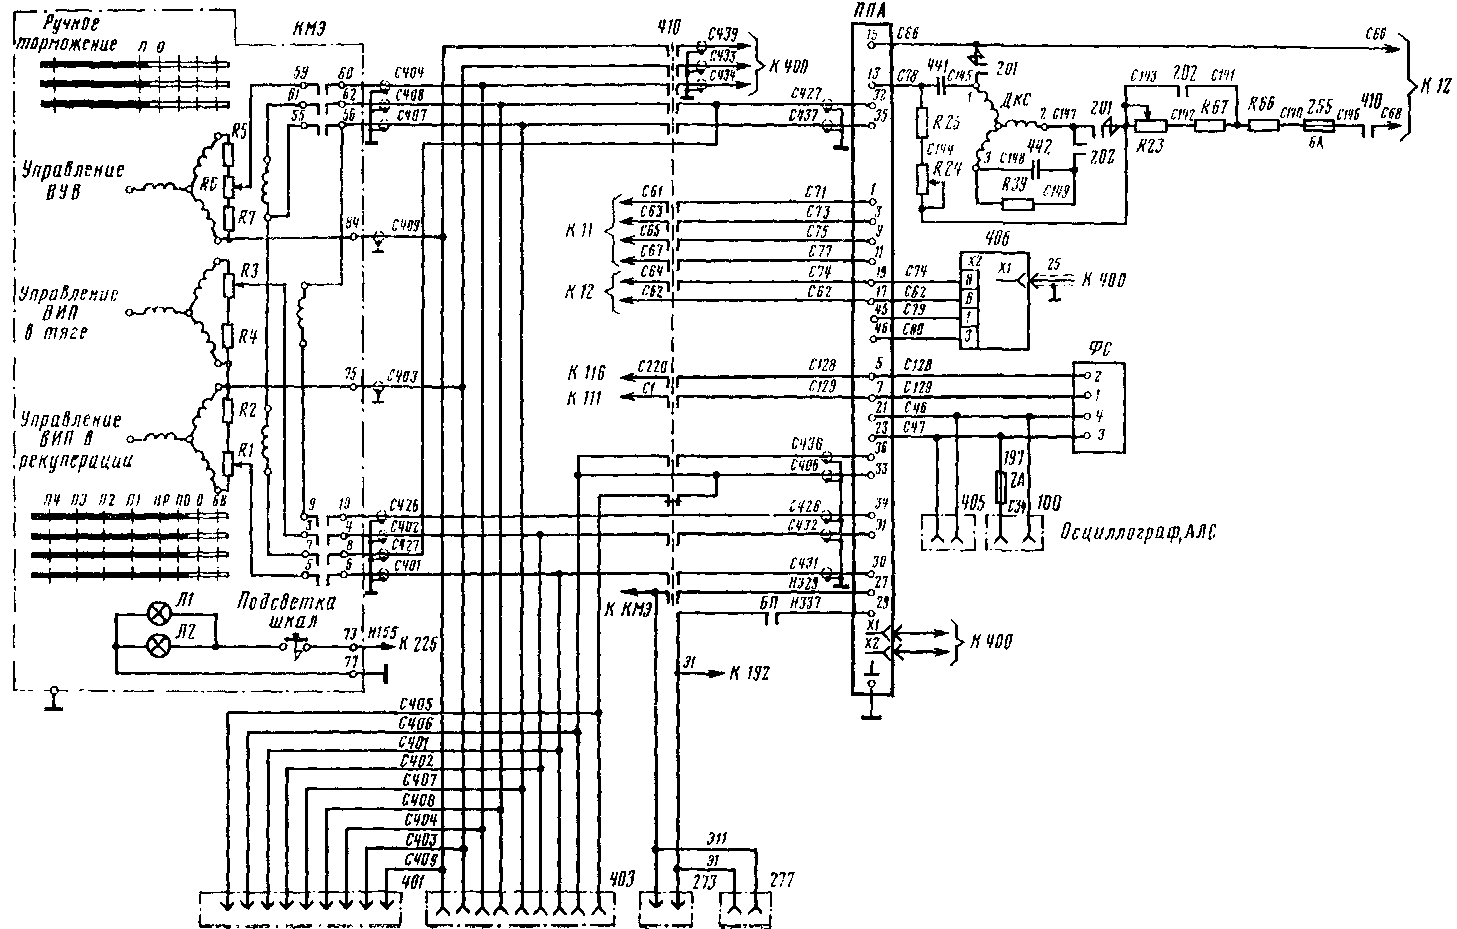 Схема цепей связи контроллера машиниста с системой регулирования